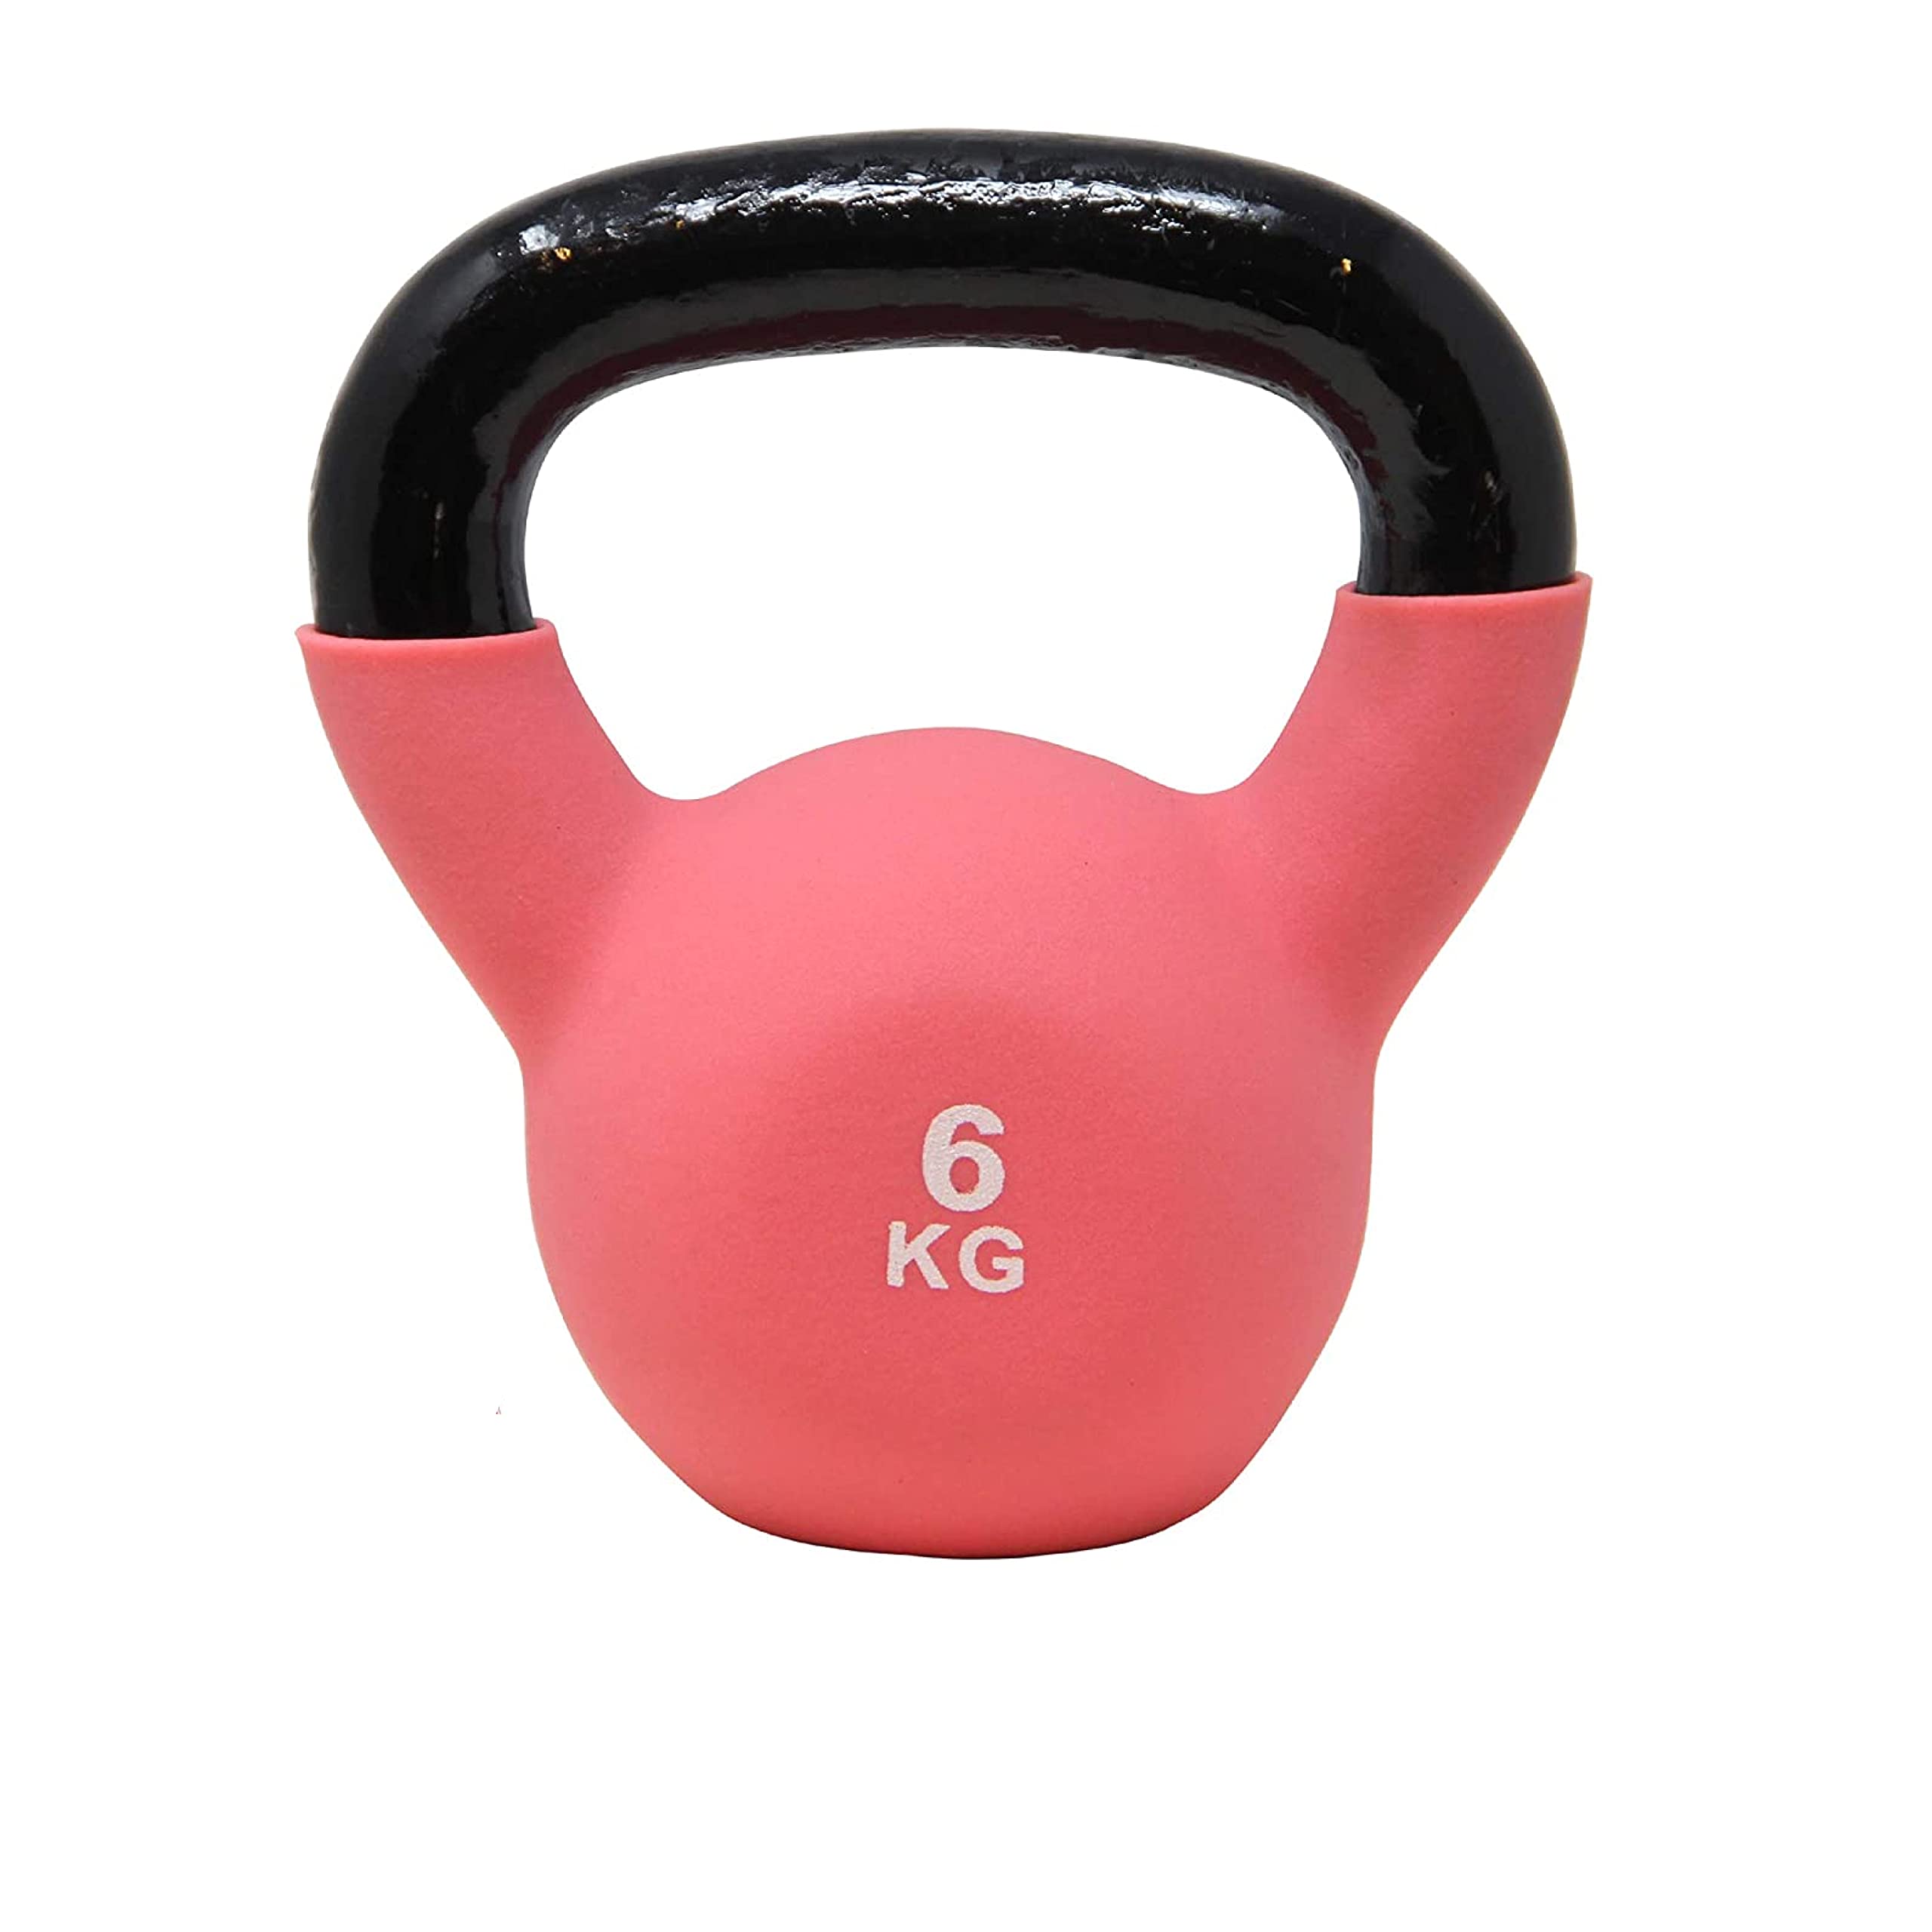 Kettlebell Neopren 2-26 kg inkl. Workout I Kugelhantel in versch. Farben und Gewichten I Bodenschonende Schwunghantel (6 kg (Rosa))